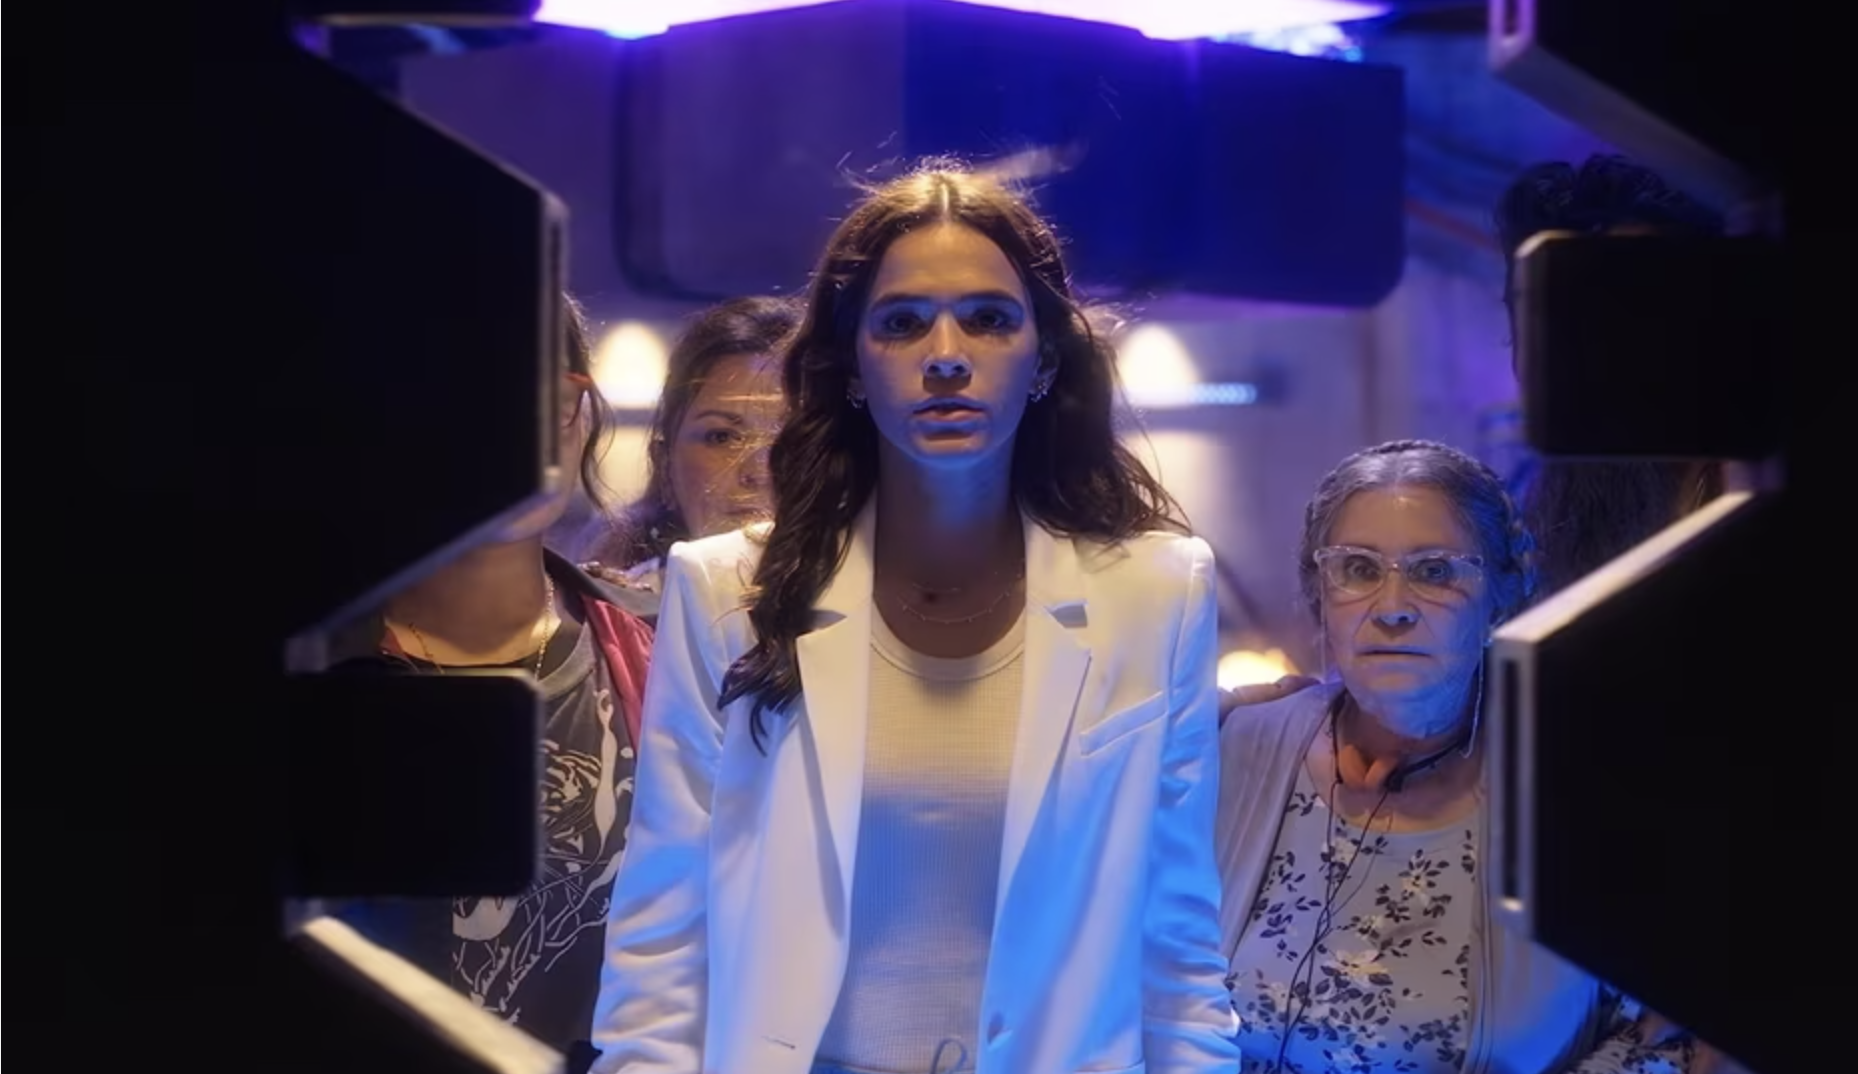 Besouro Azul: Diretor revela cena “emocionante” com Bruna Marquezine que foi cortada da produção, e explica motivo